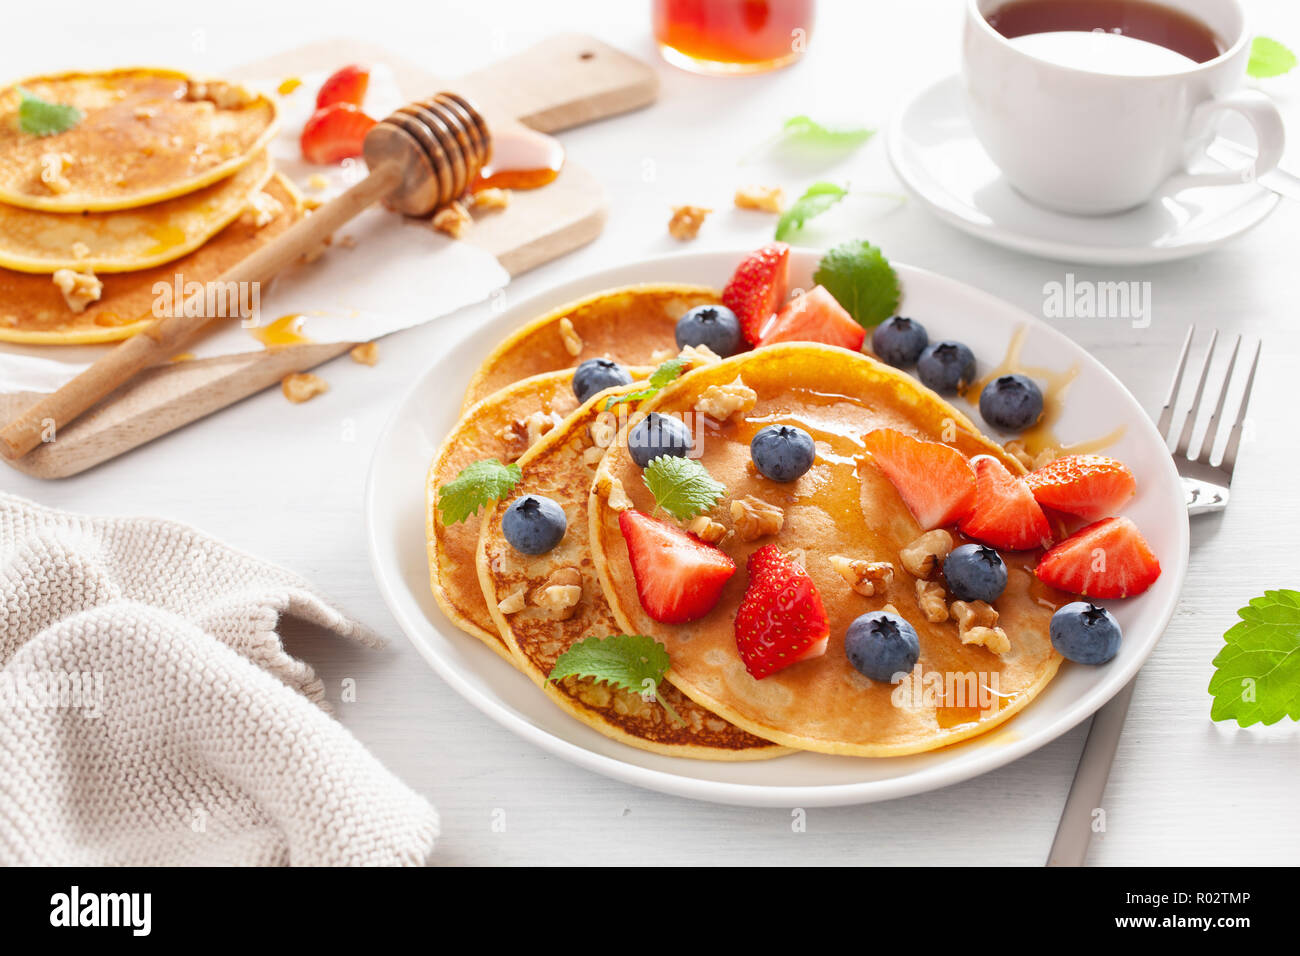 Des crêpes au miel et noix myrtille fraise pour le petit déjeuner Banque D'Images